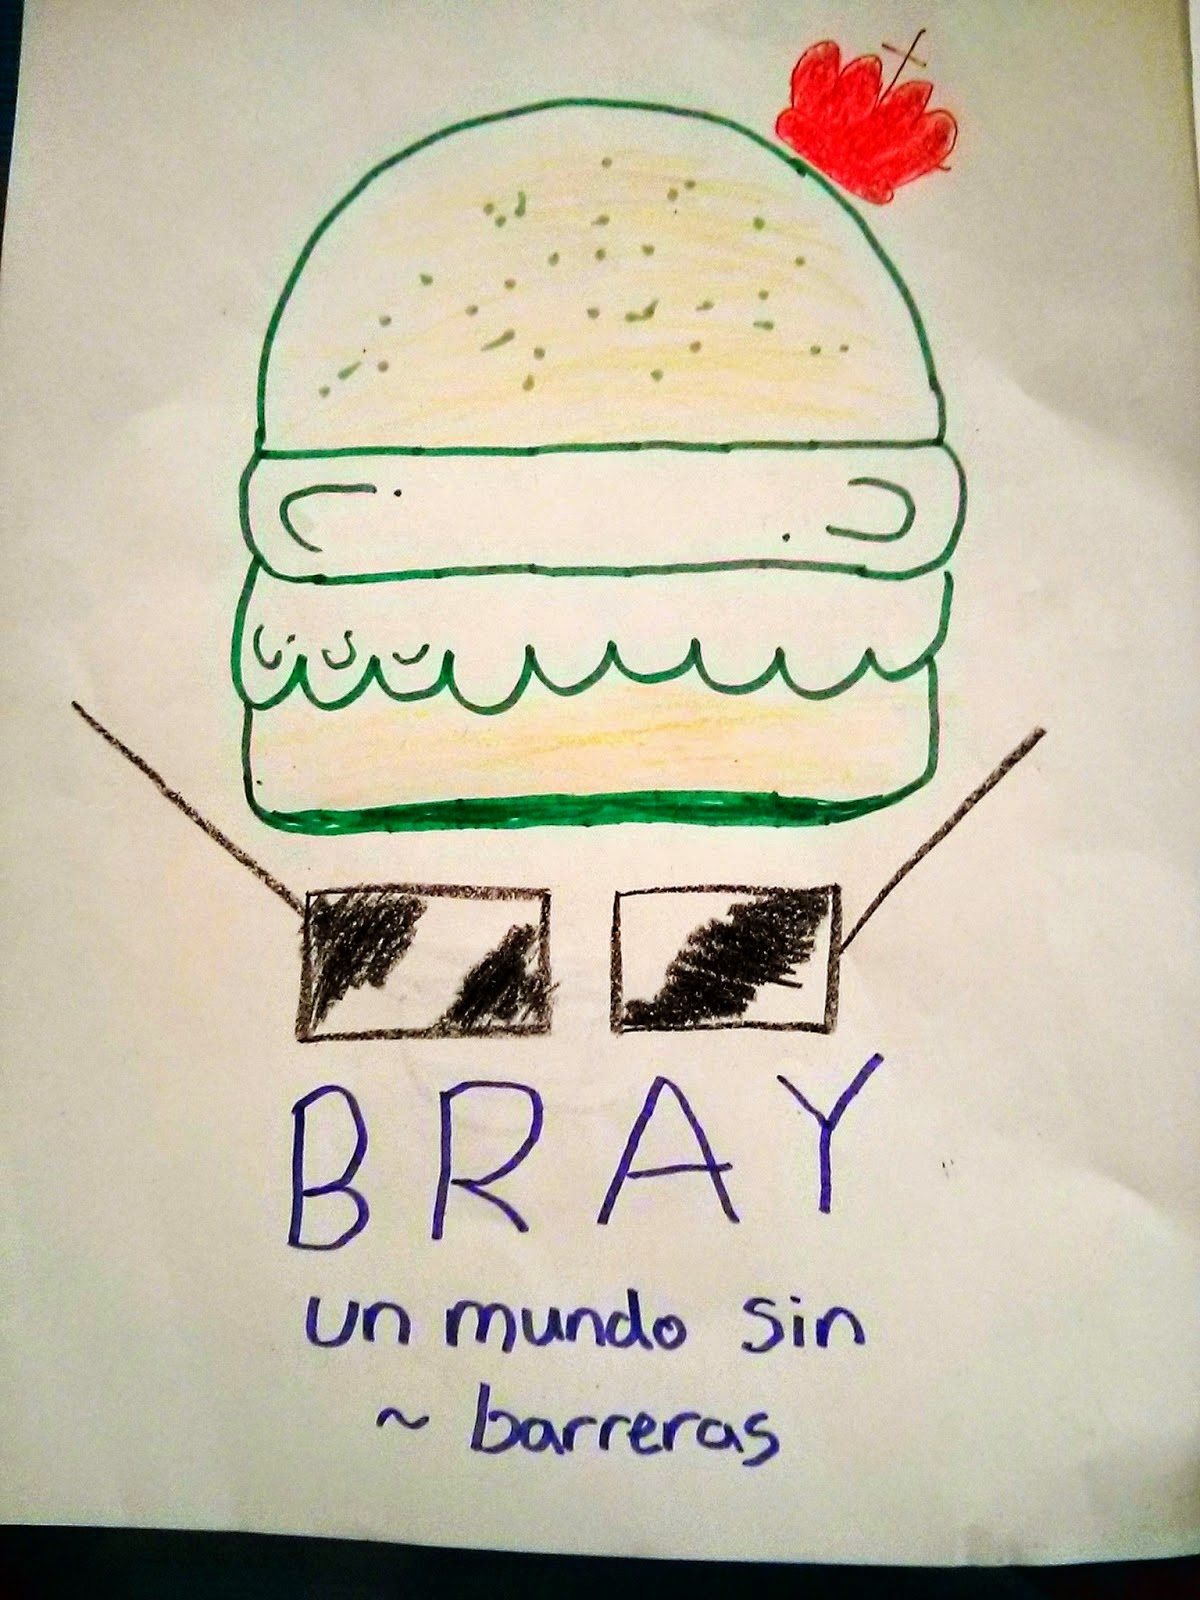 Bray